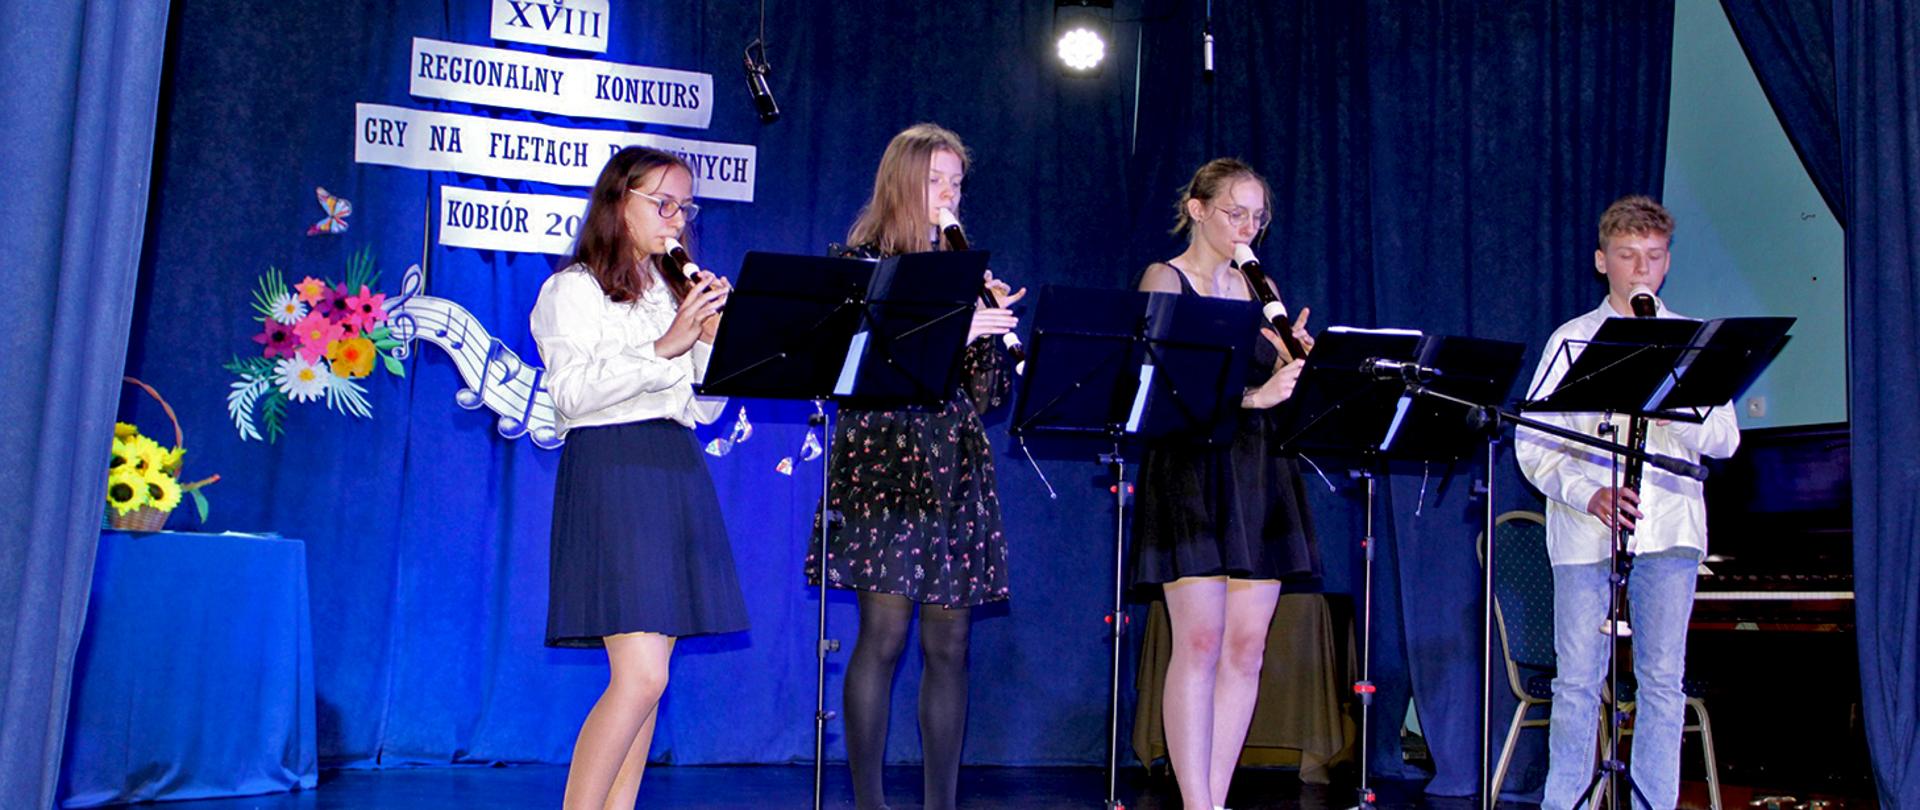 Czworo uczniów grających na fletach w tle niebieskie tło oraz napis Regionalny Konkurs Gry na Fletach Podłużnych